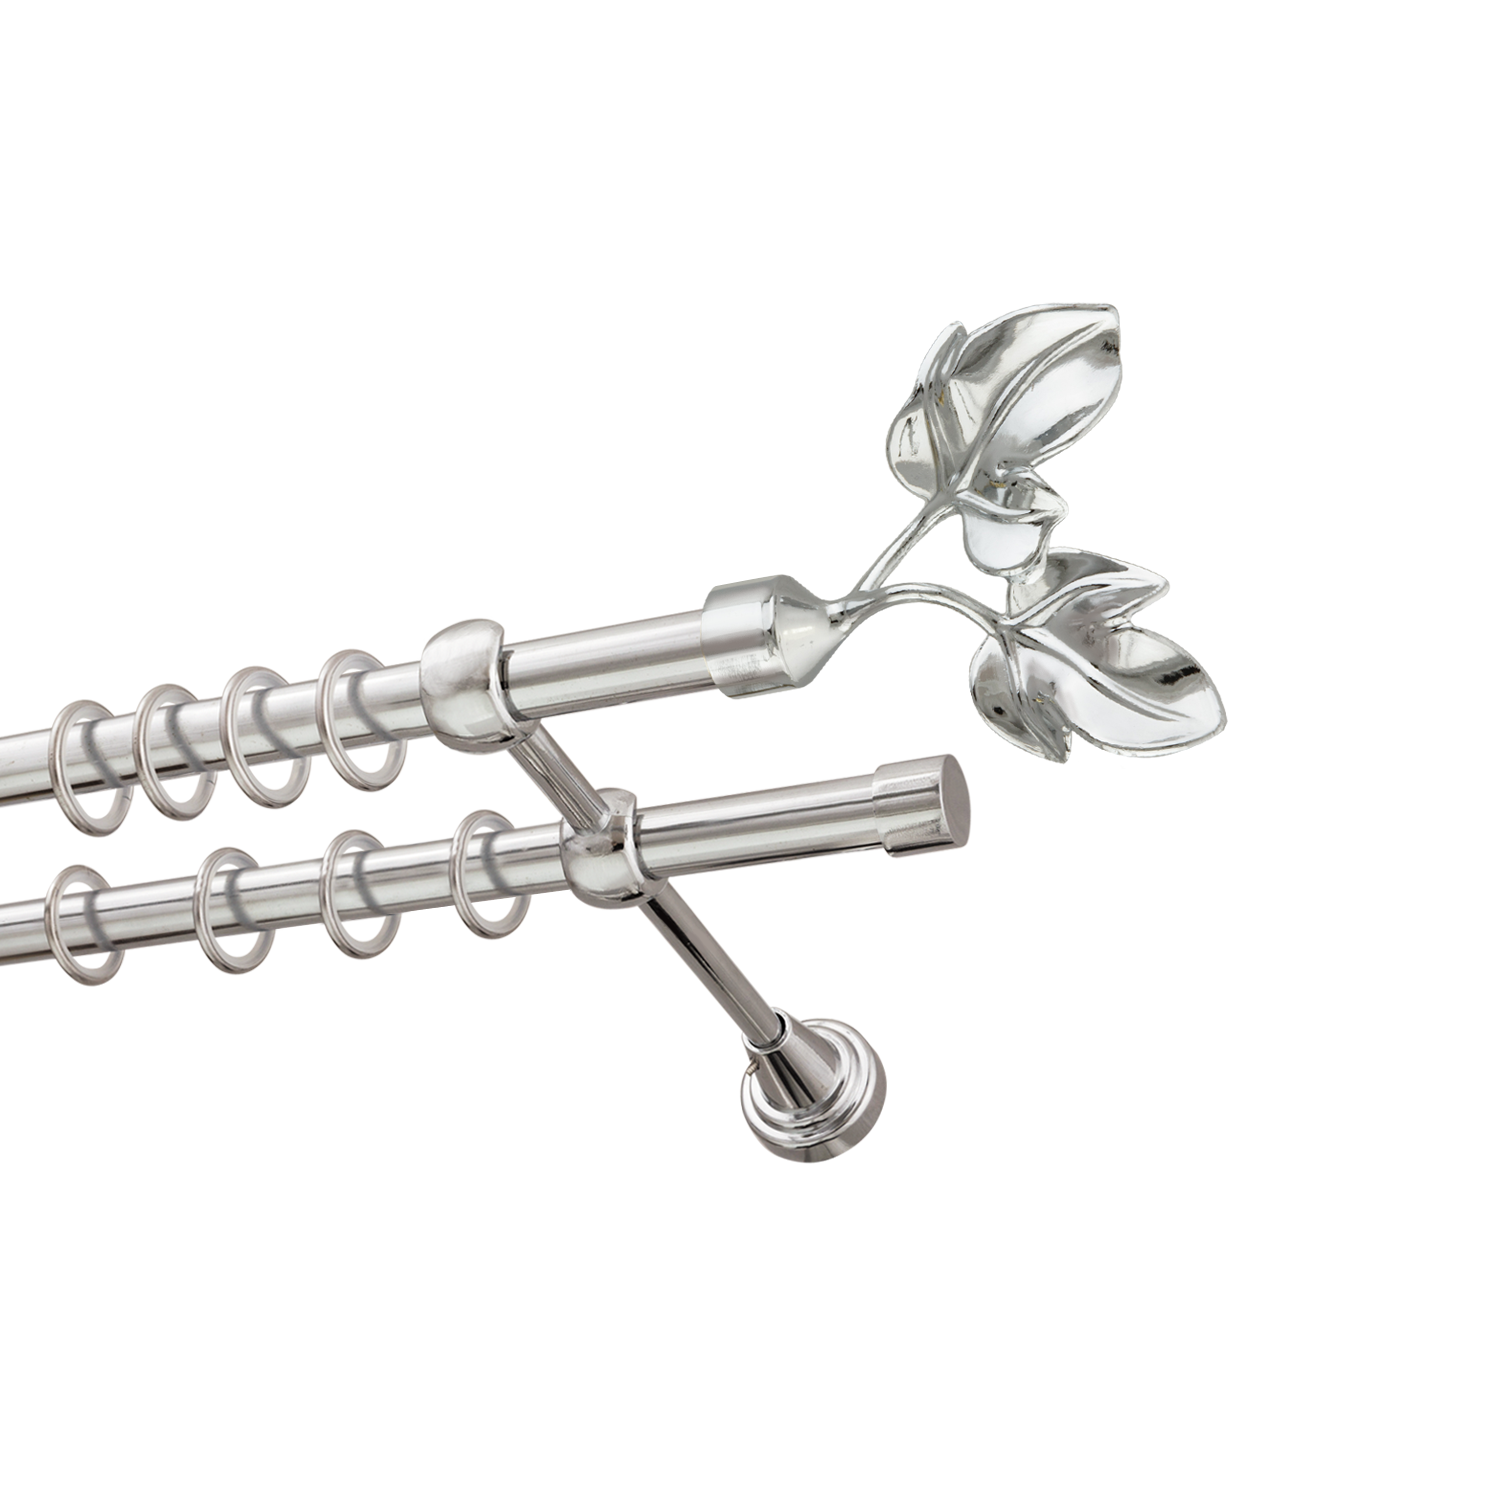 Металлический карниз для штор Листья, двухрядный 16/16 мм, серебро, гладкая штанга, длина 240 см - фото Wikidecor.ru